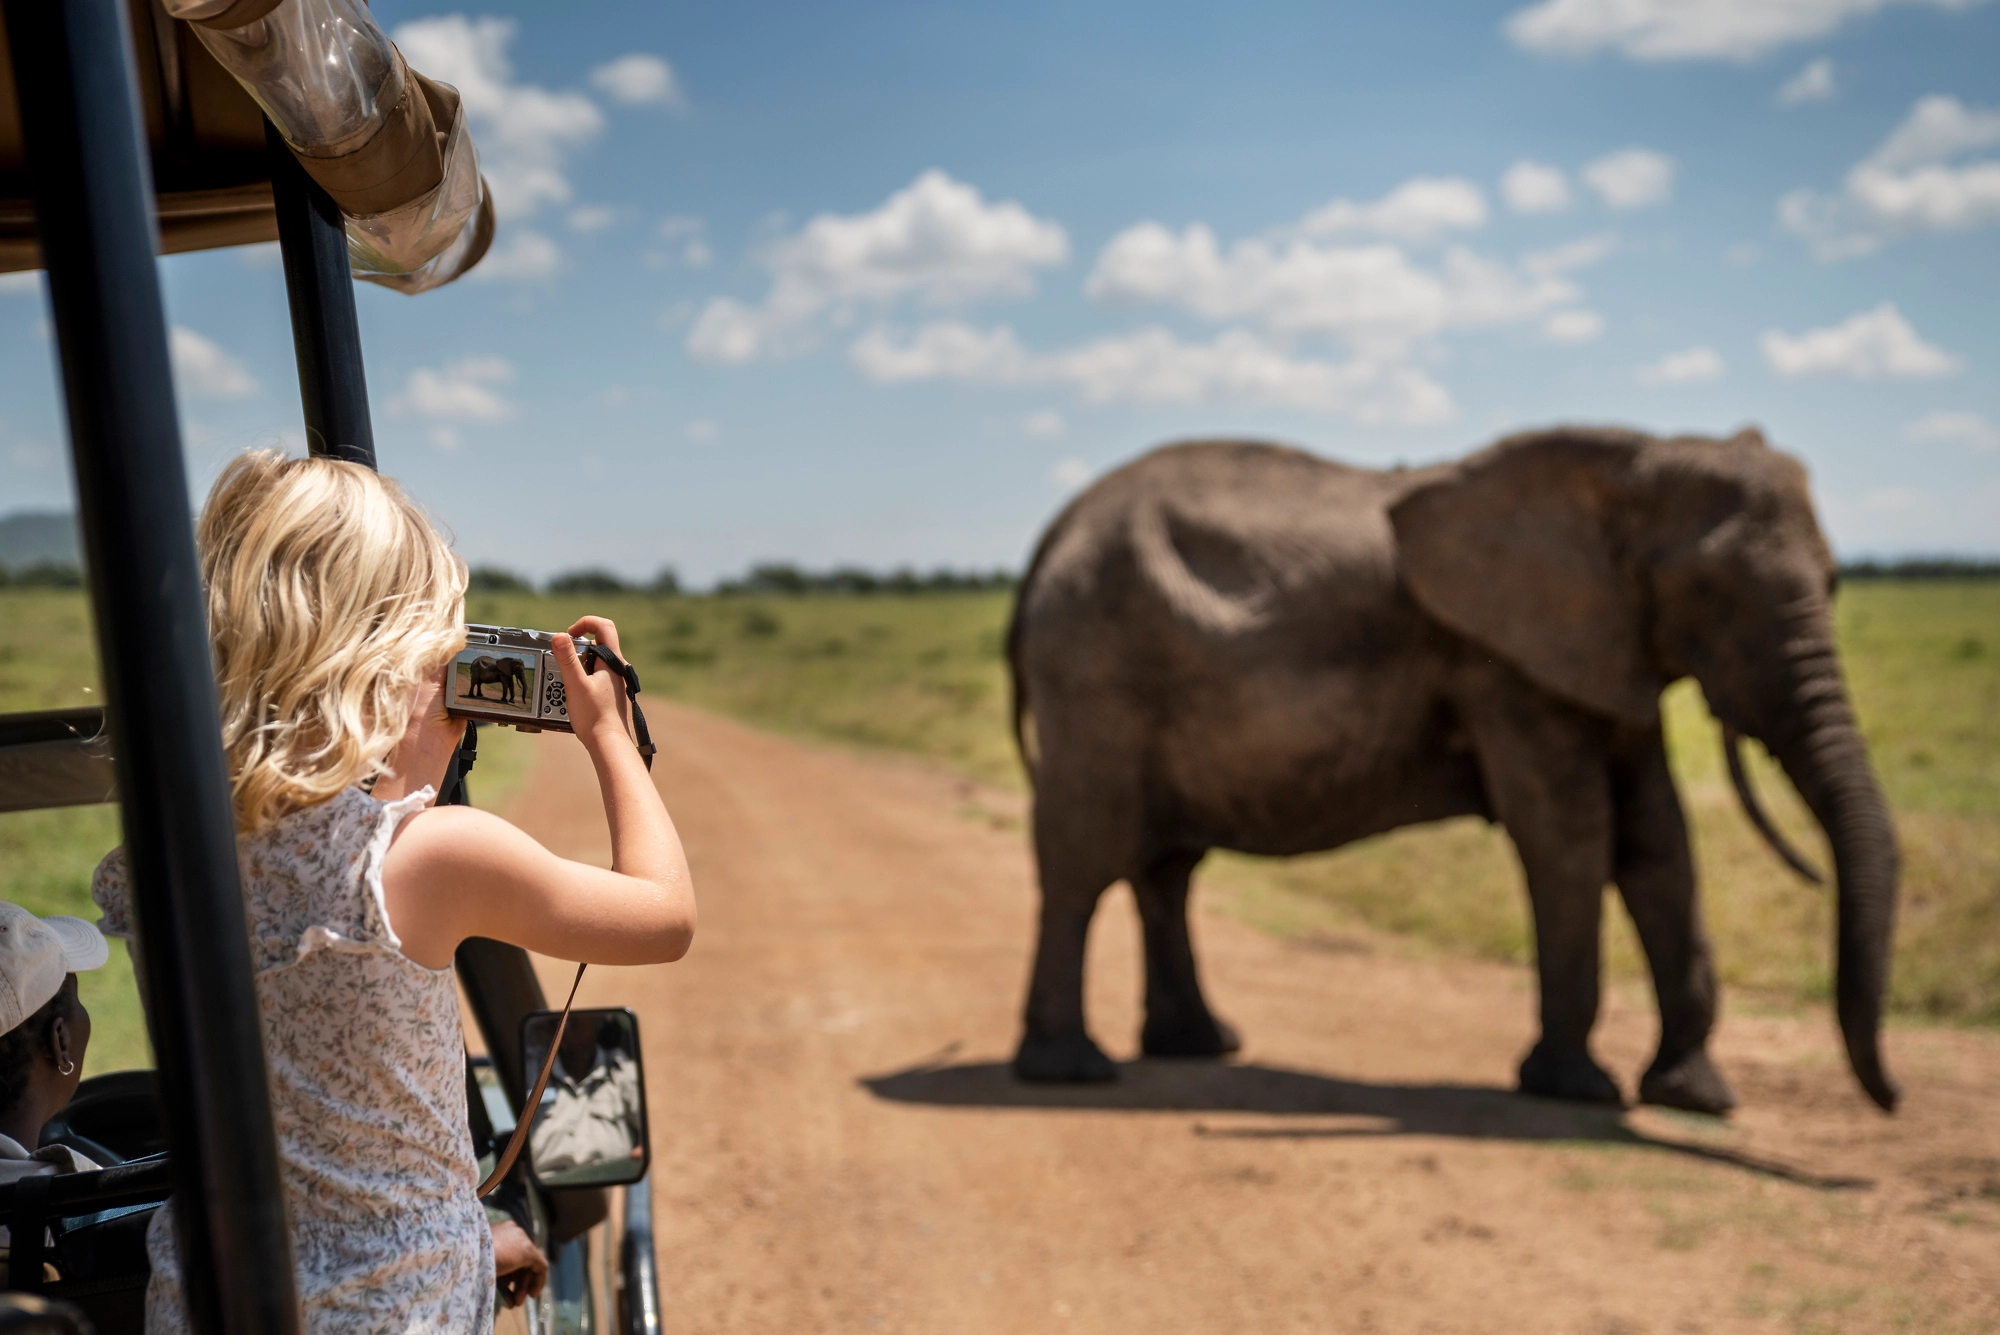 Kenya safari for families - Family on a safari in Masai Mara